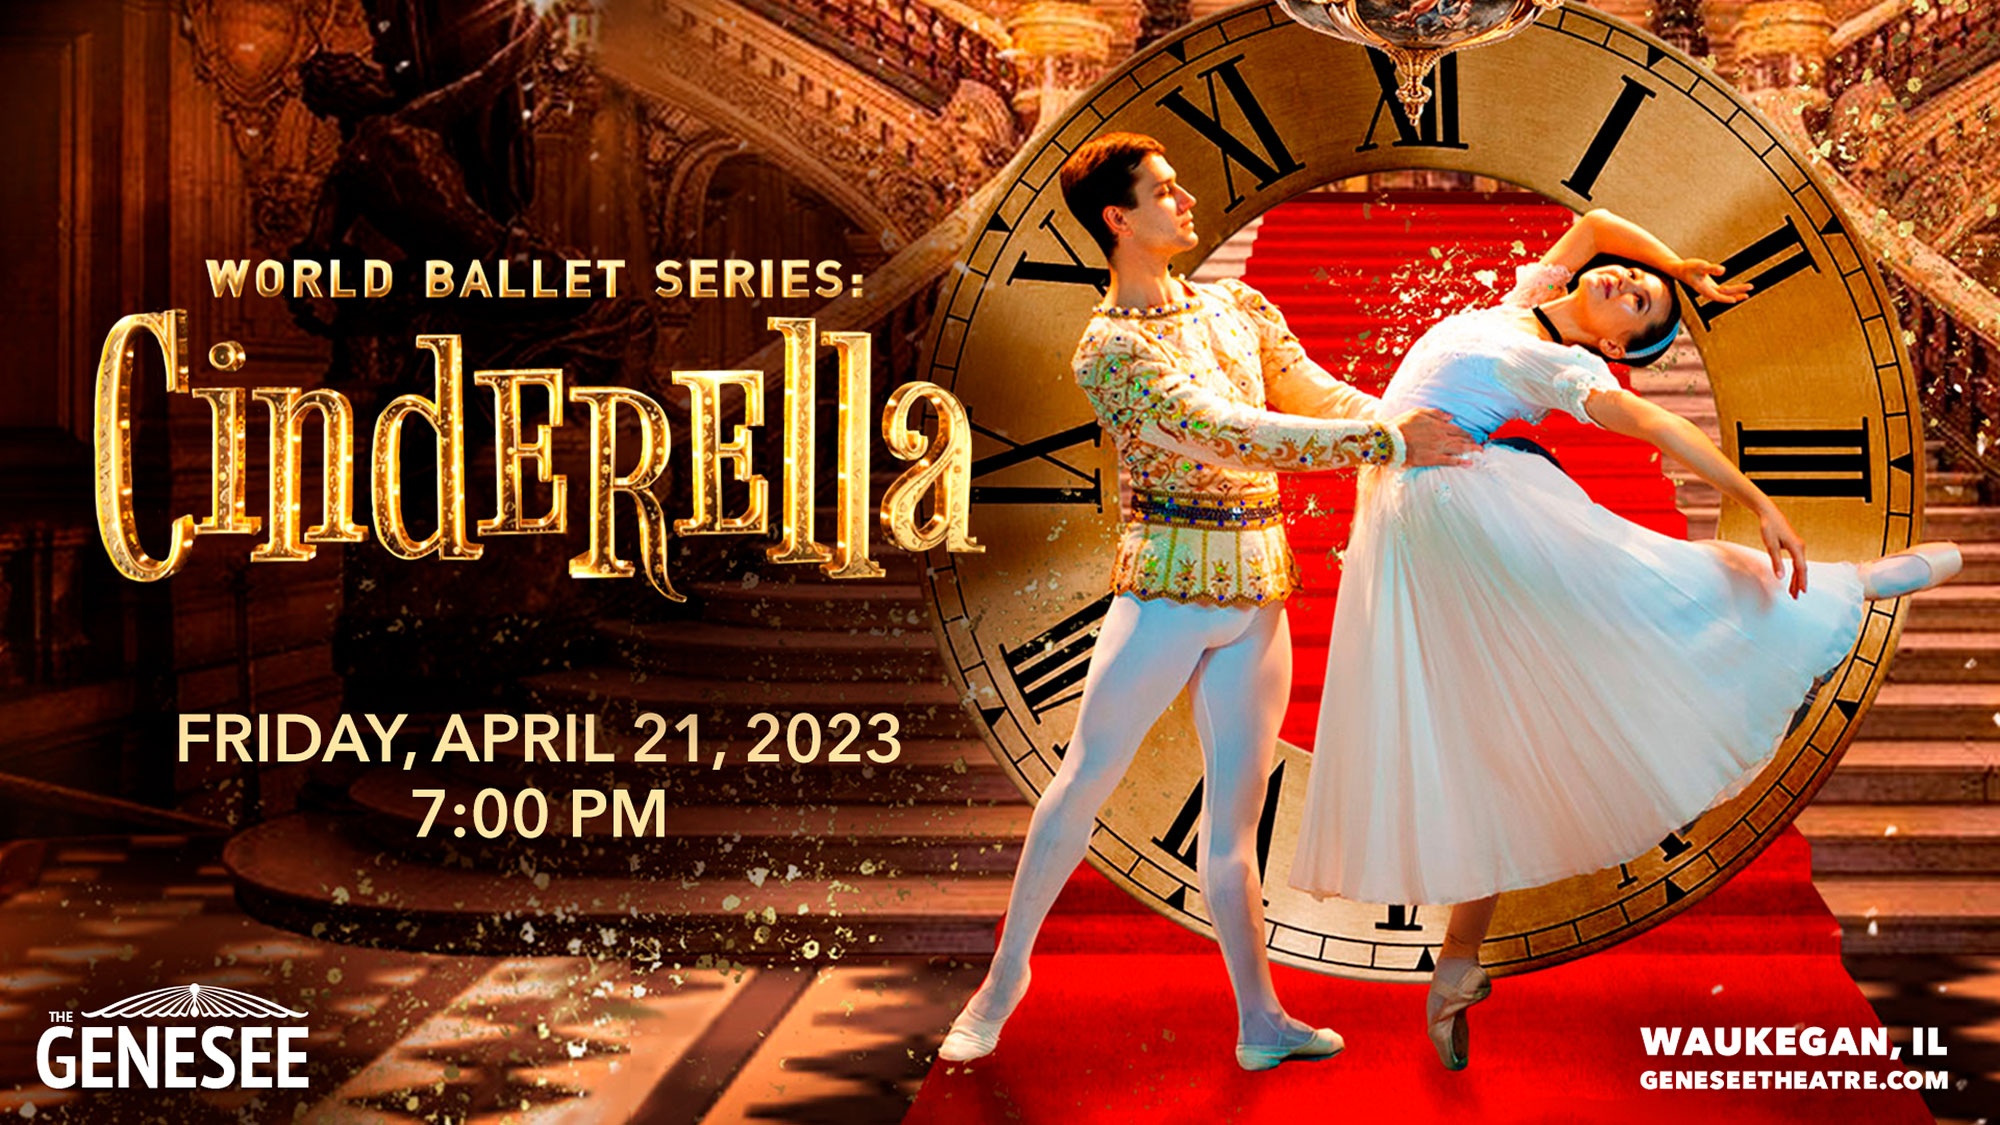 World Ballet Series: Cinderella at Genesee Theatre